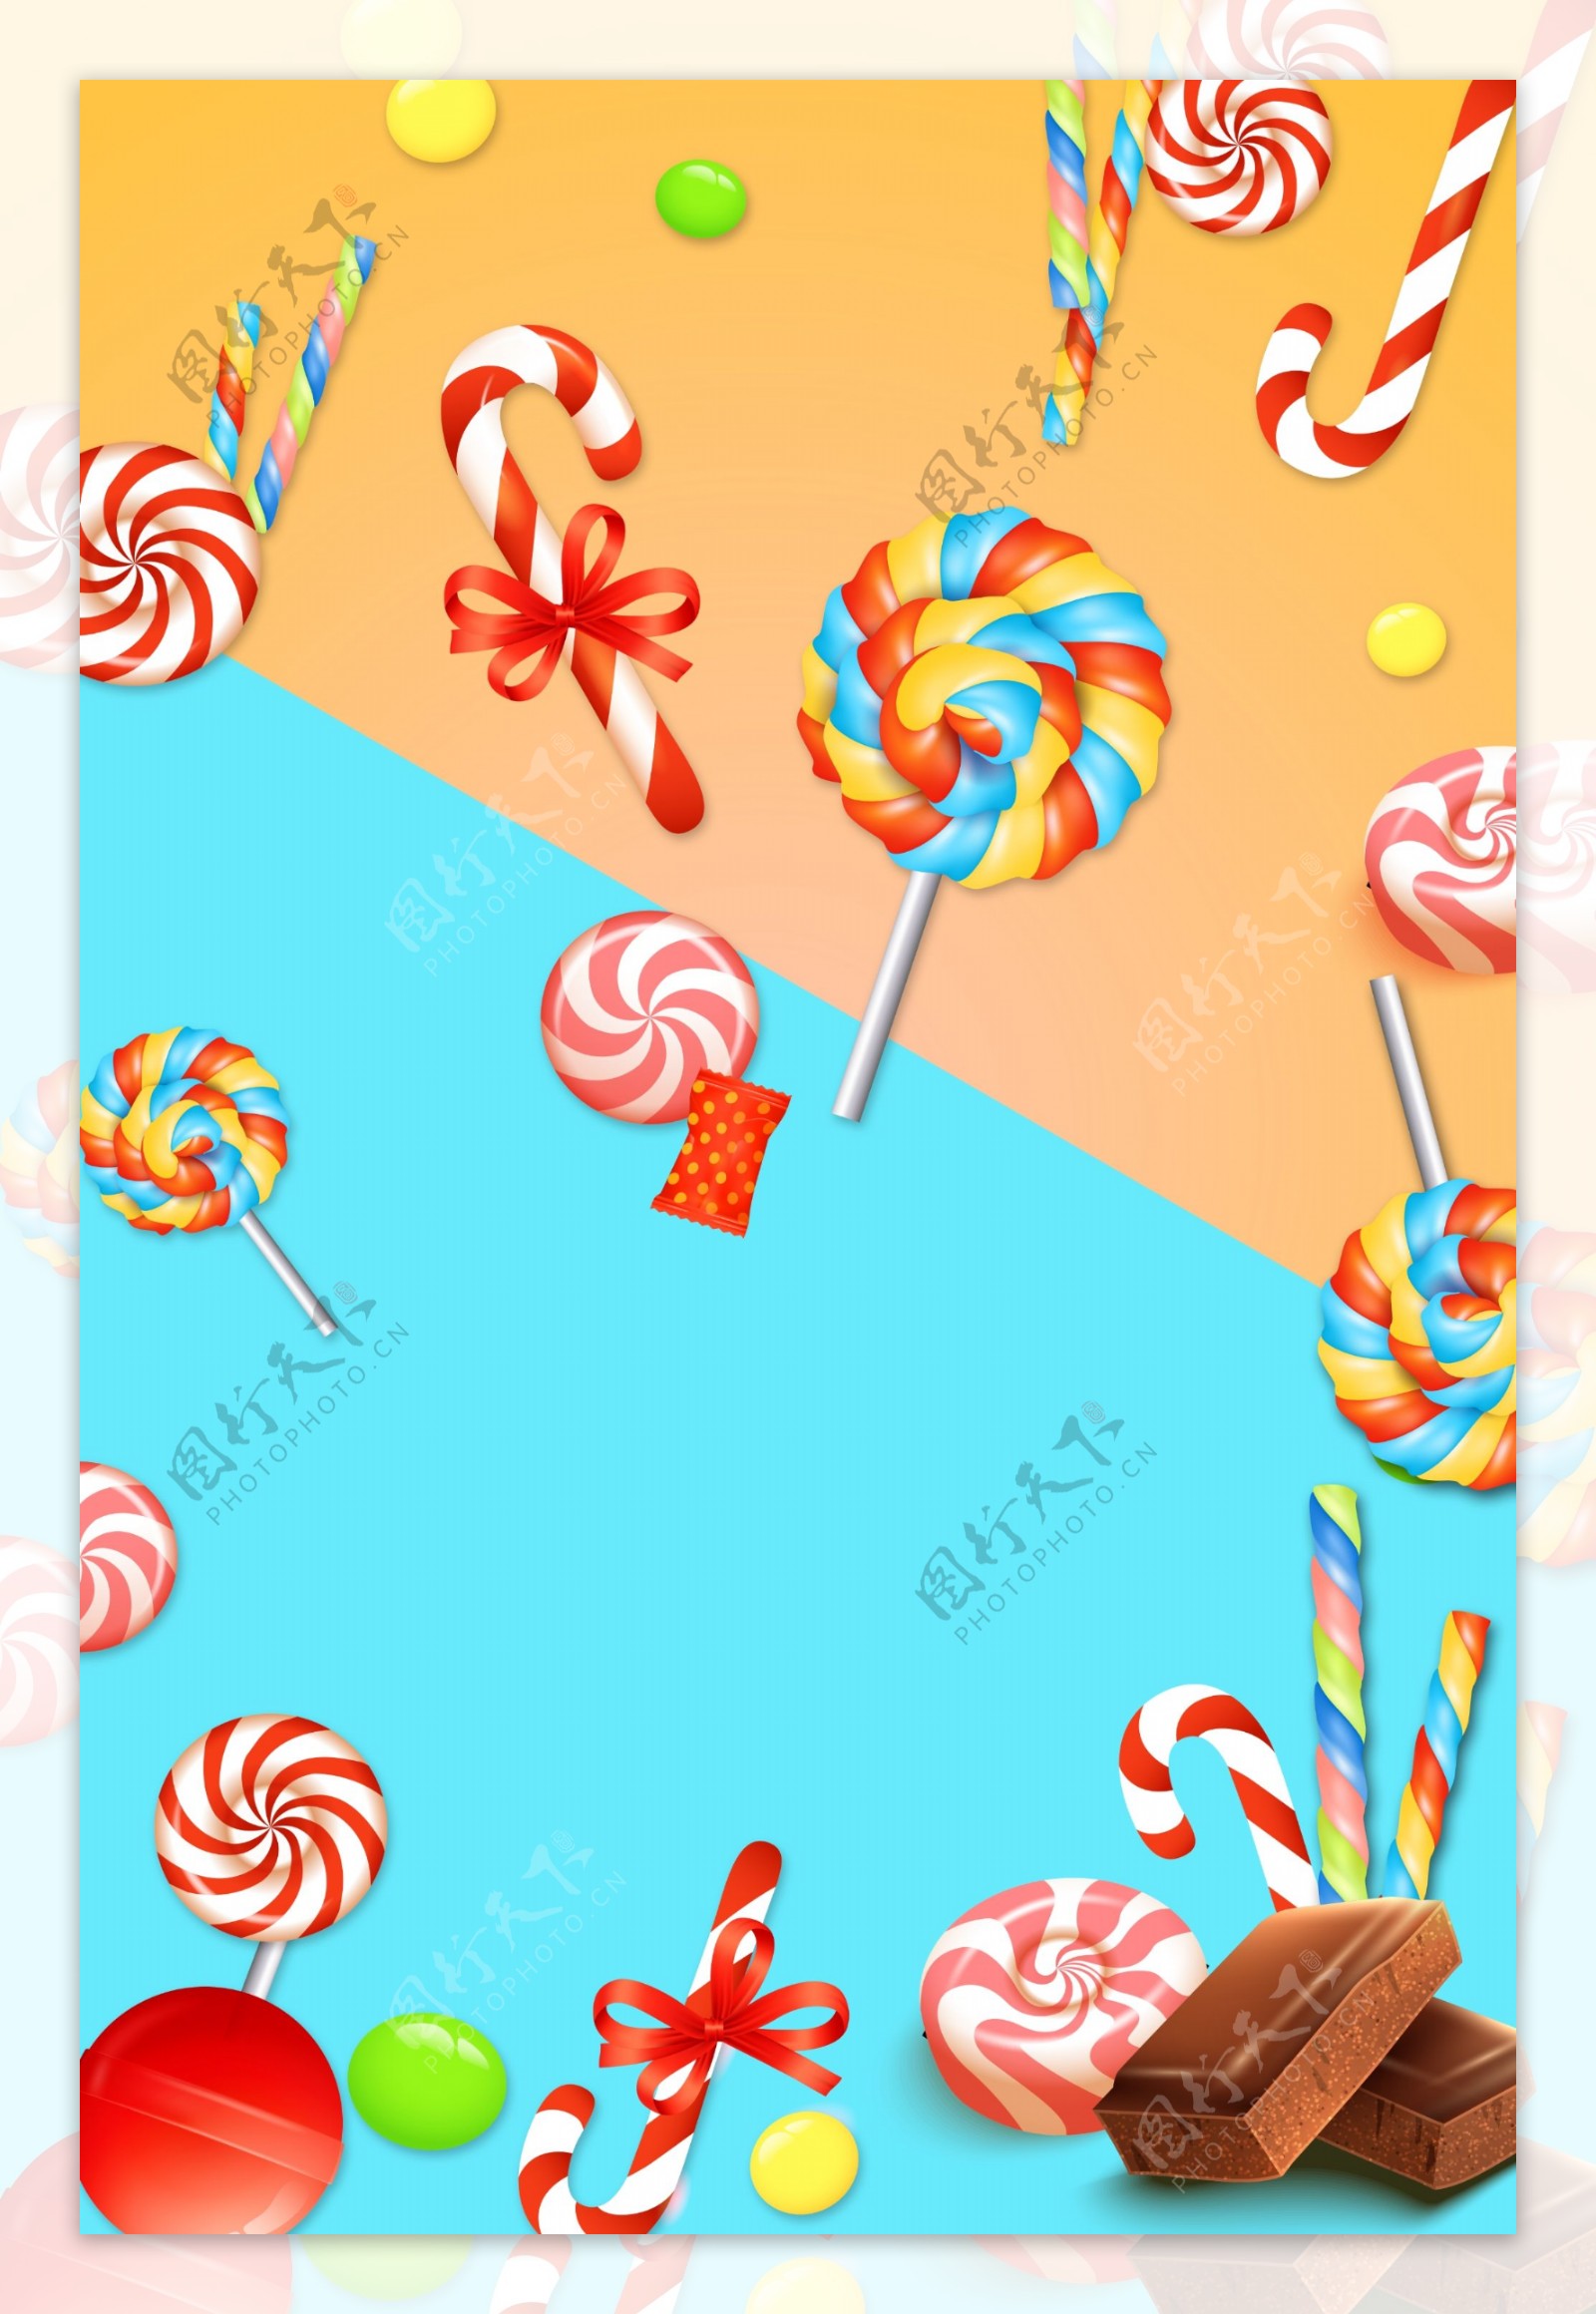 漂亮的彩色棒棒糖海报背景素材